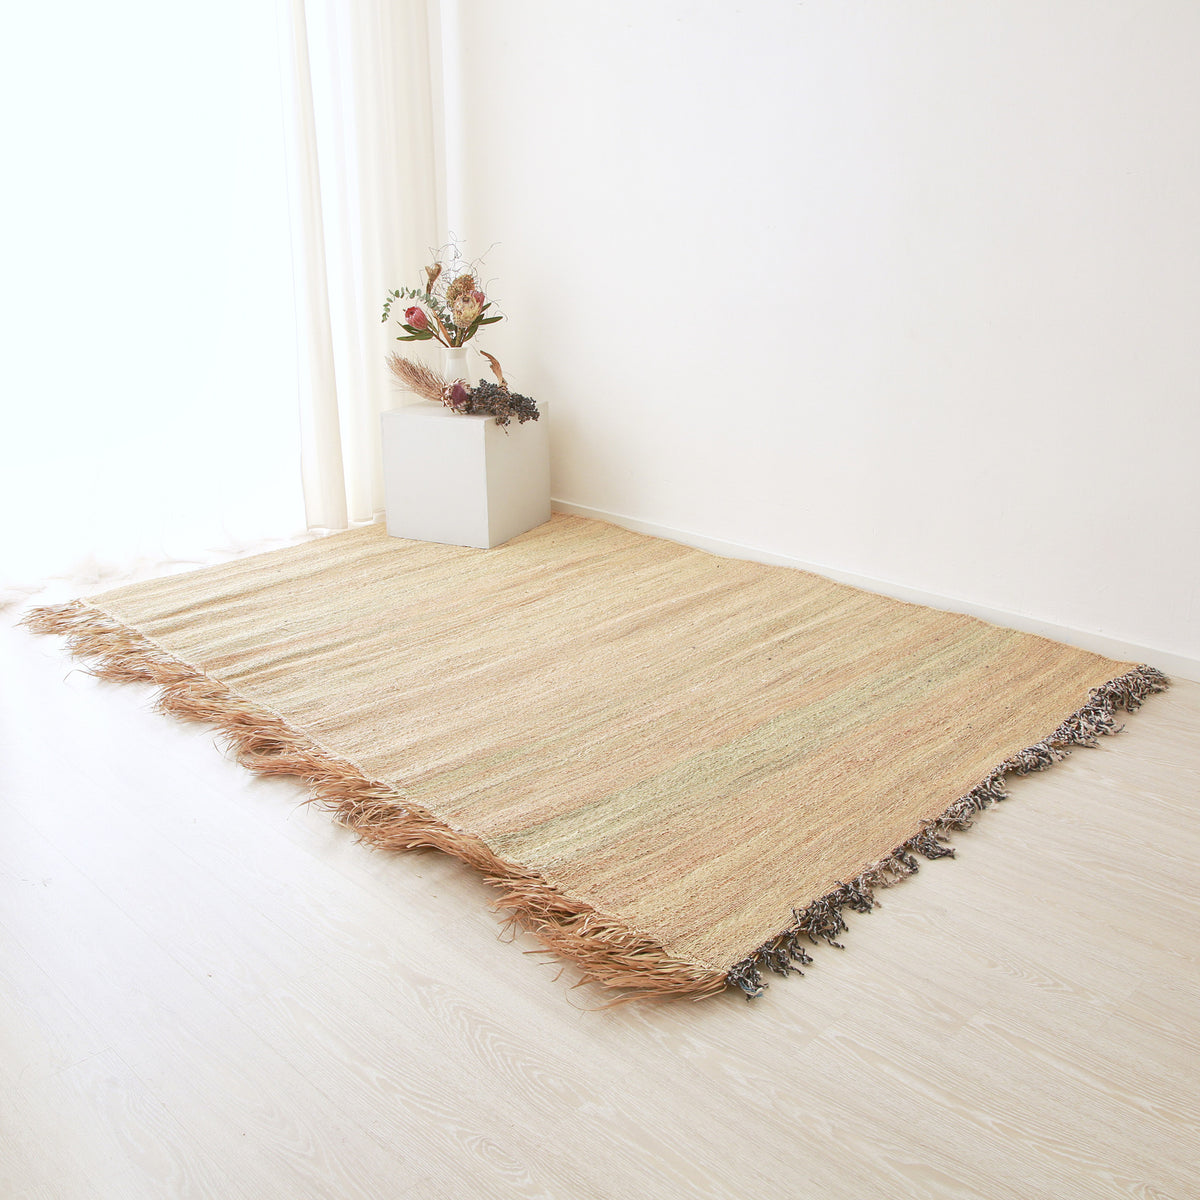 tappeto stuoia hassira senza ricami intrecciata con paglia di palma con un frangia laterale in paglia su pavimento con una composizione floreale